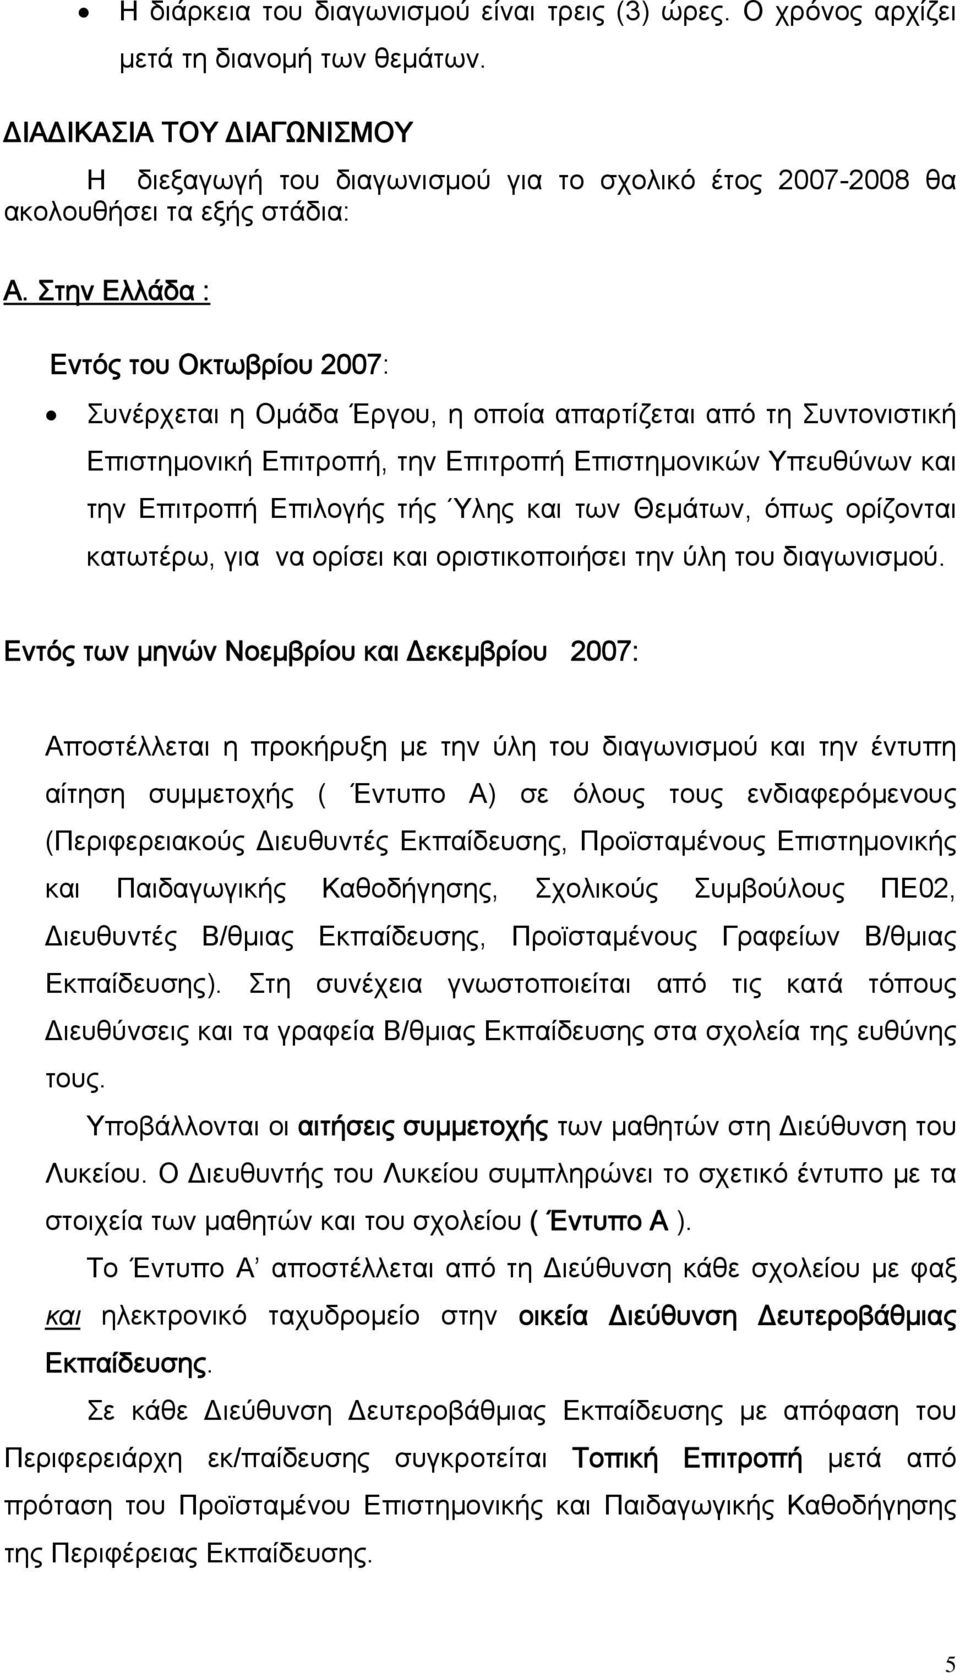 Στην Ελλάδα : Εντός του Οκτωβρίου 2007: Συνέρχεται η Ομάδα Έργου, η οποία απαρτίζεται από τη Συντονιστική Επιστημονική Επιτροπή, την Επιτροπή Επιστημονικών Υπευθύνων και την Επιτροπή Επιλογής τής